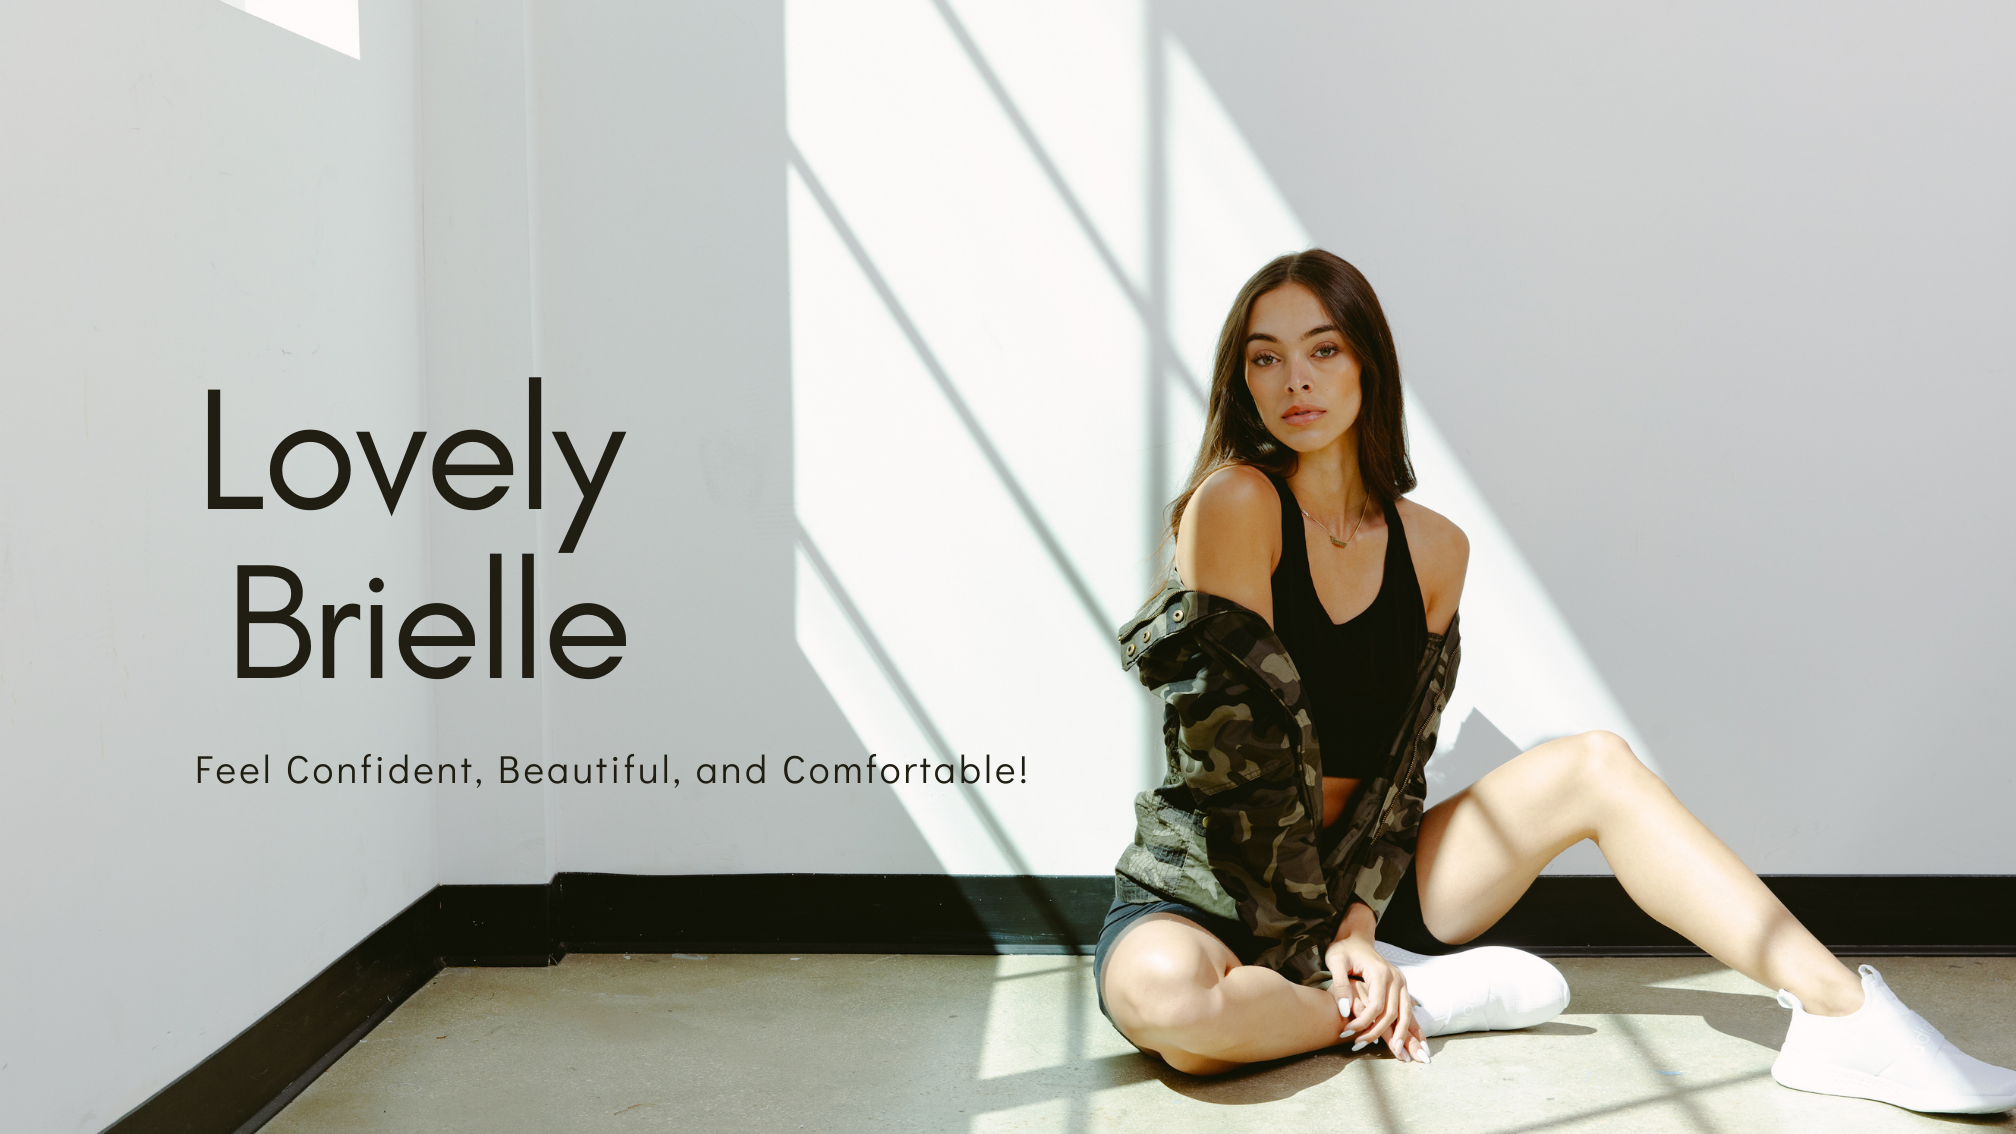 Lovely Brielle Boutique - Online Boutique Women's Clothing